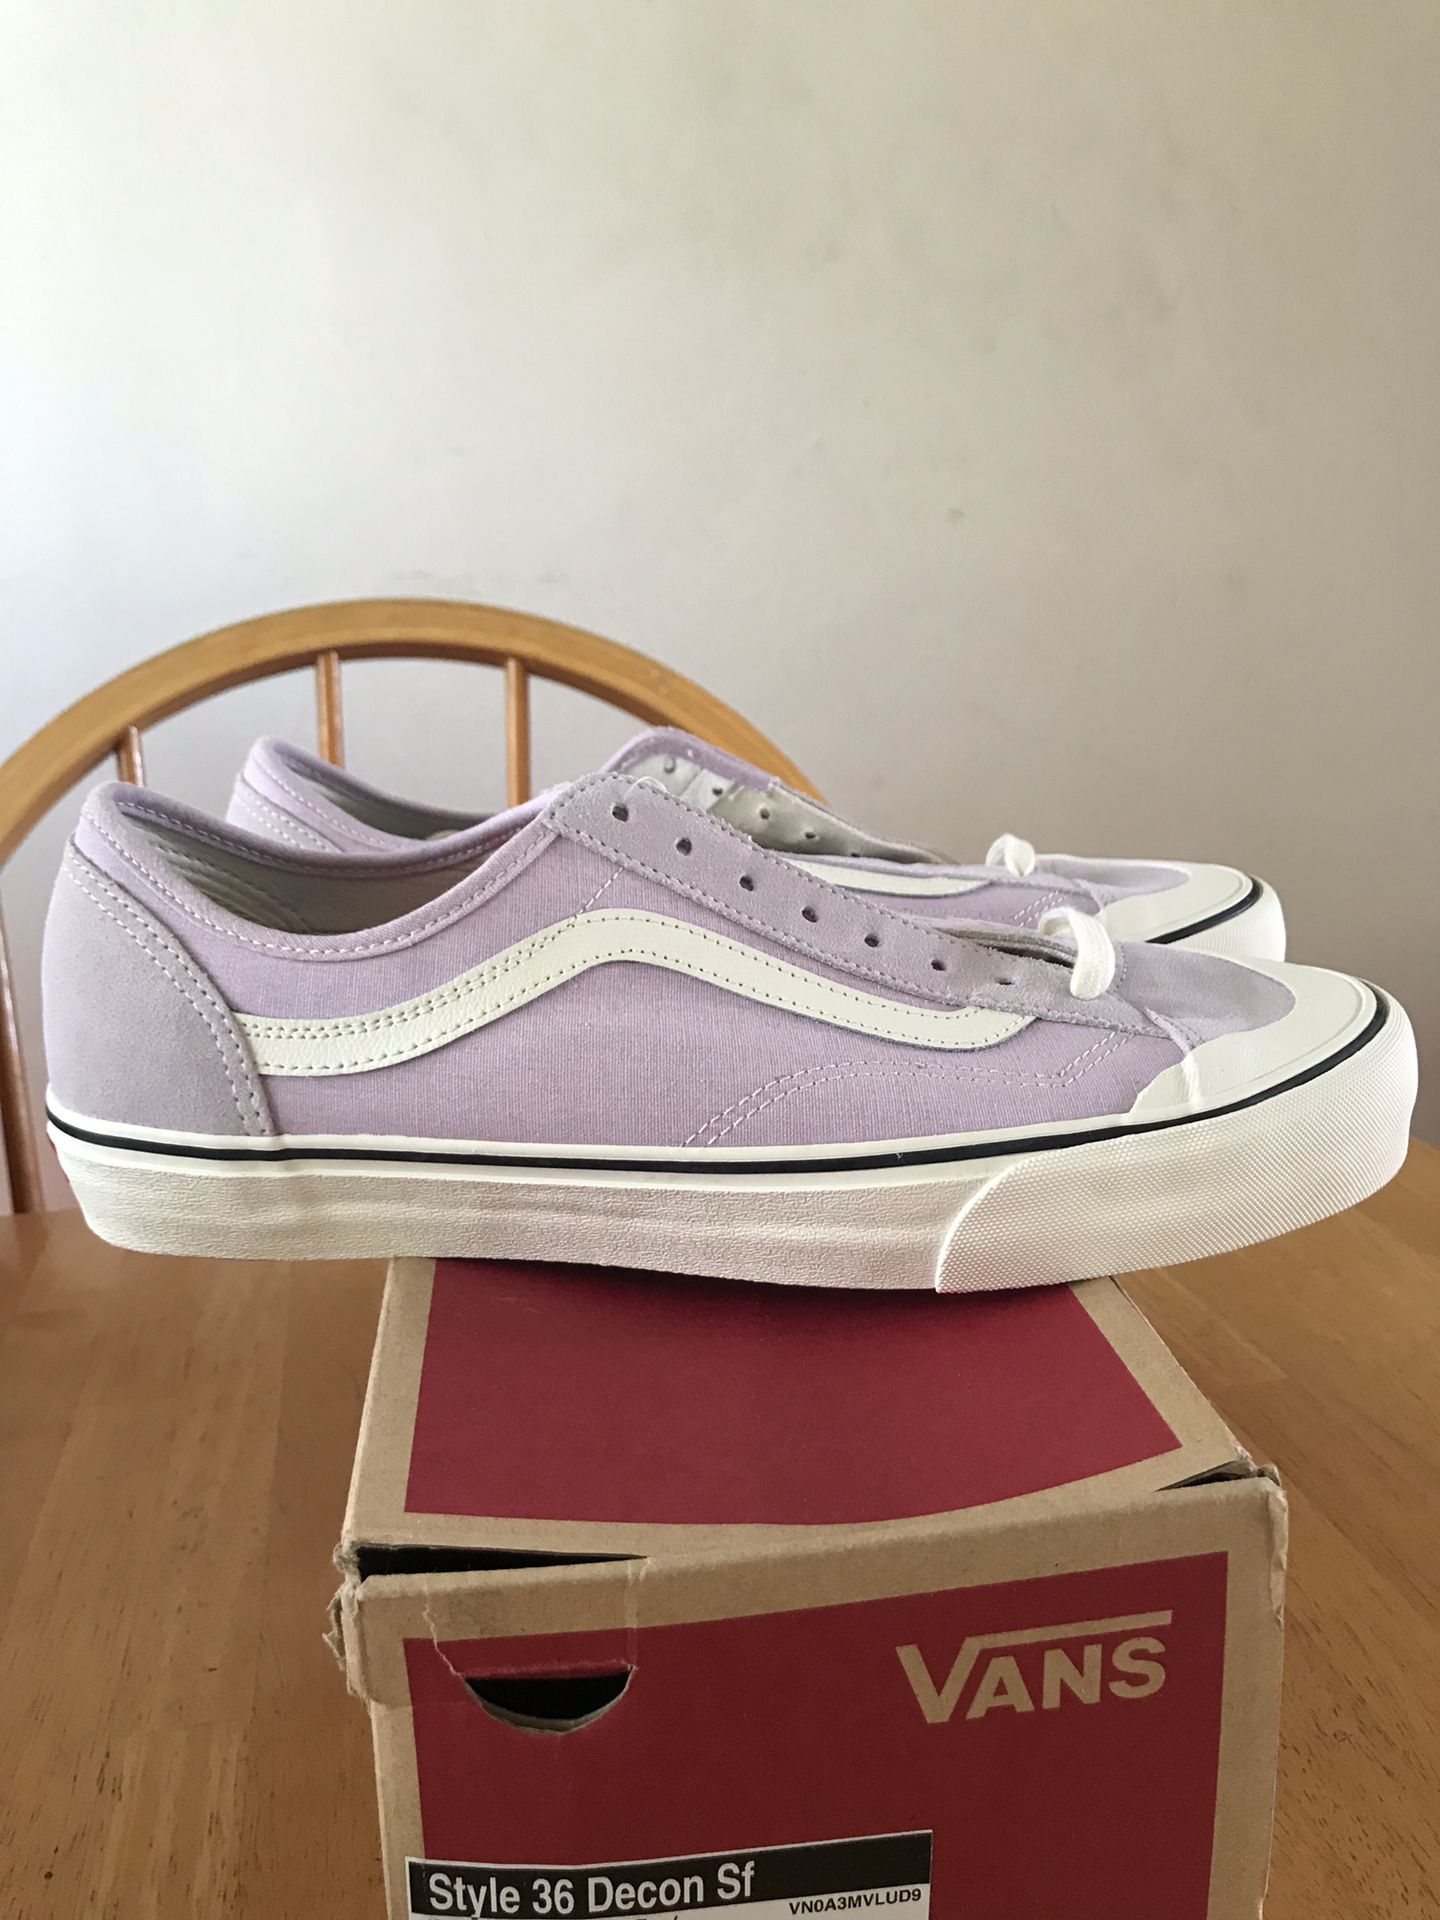 Brand new vans skate skateboard shoes lavender fog style 36 men’s size 12